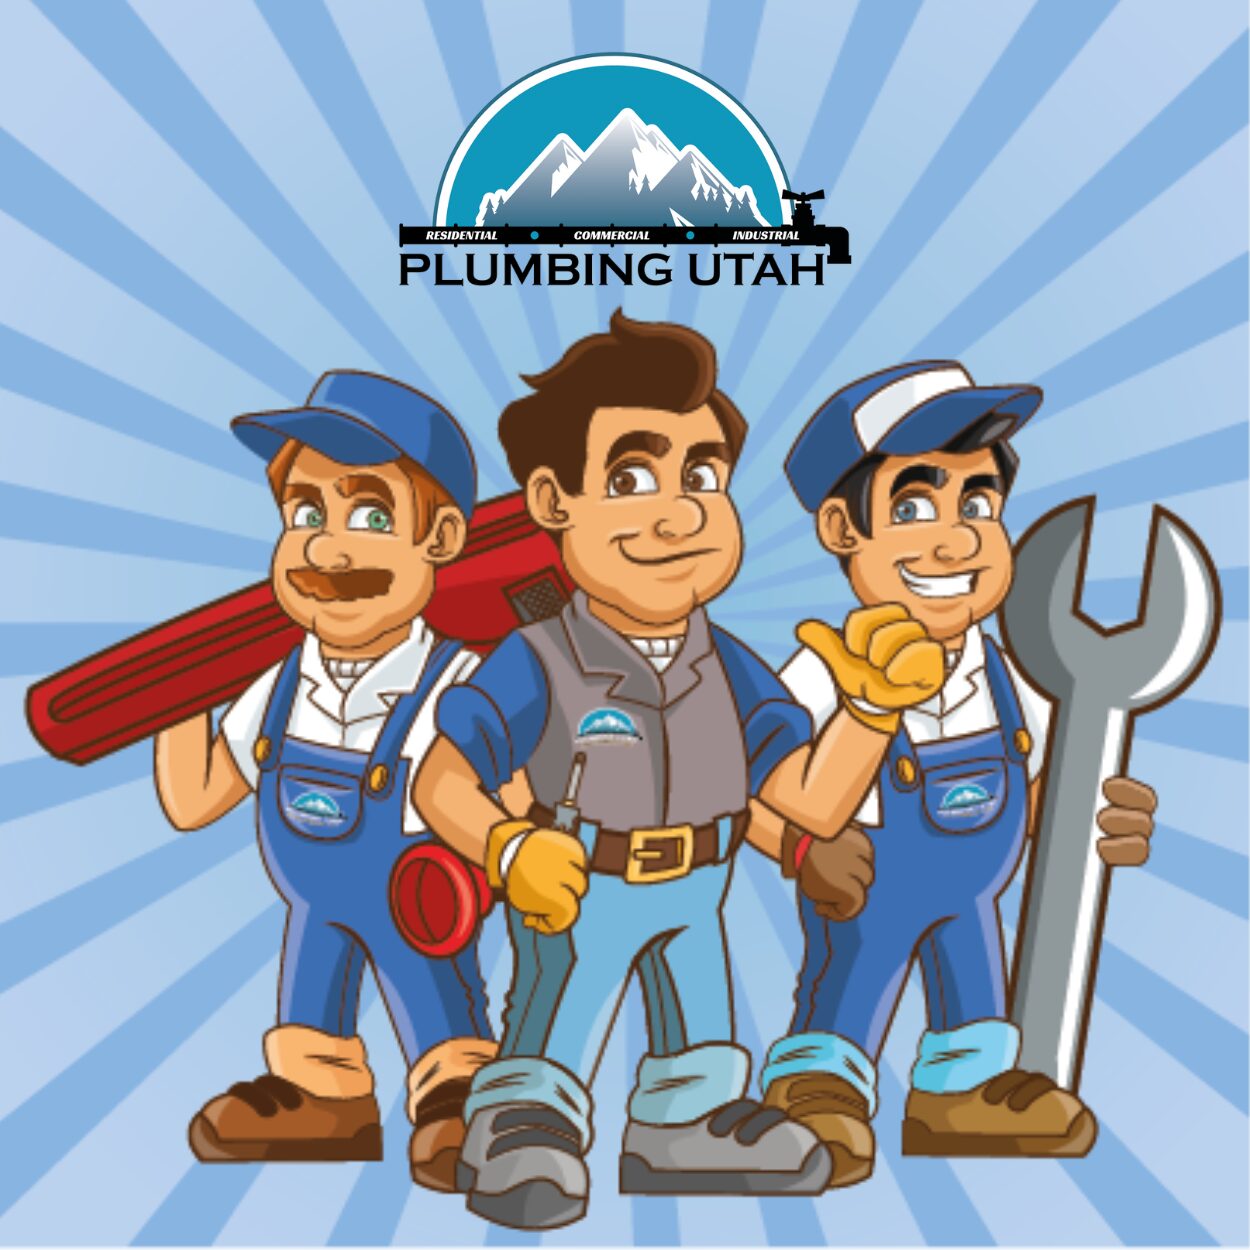 plumbing-utah-mascots